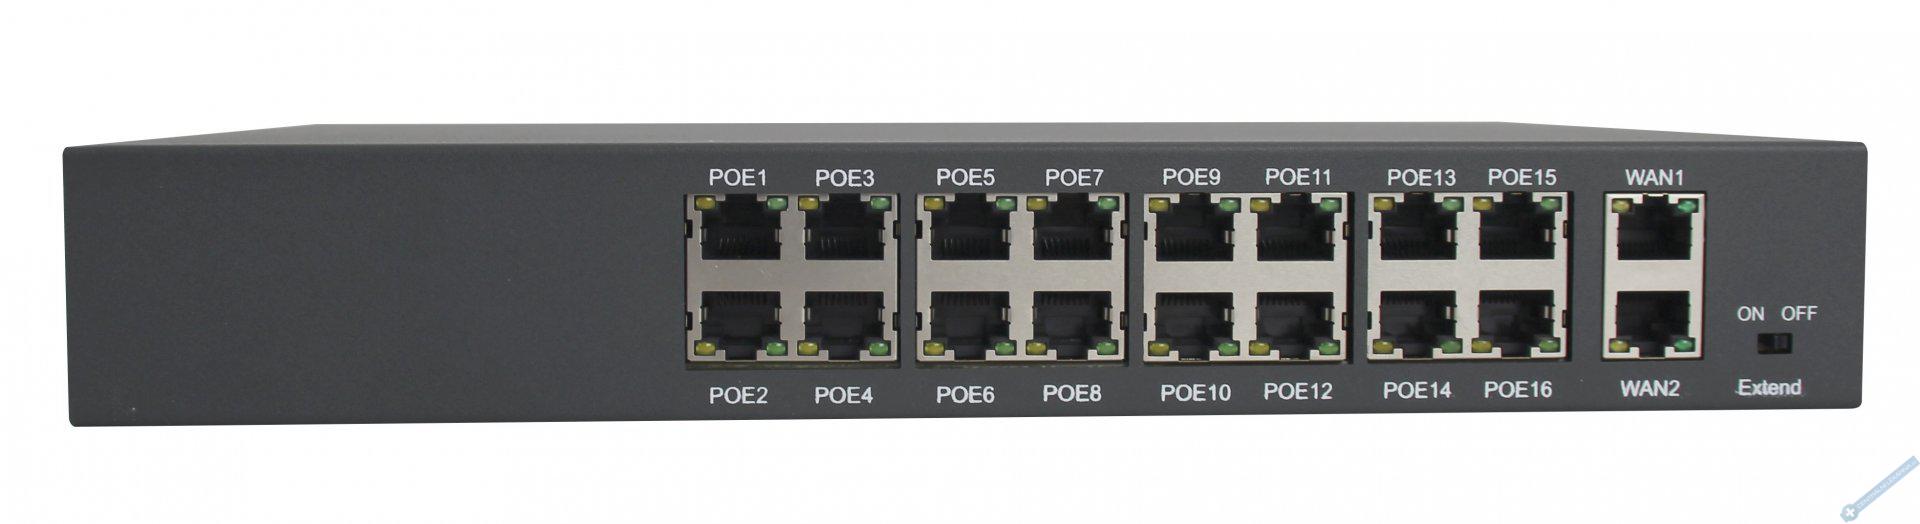 Šestnáctiportový 10/100 Mbps PoE switch s 2x gigabitovým uplinkem